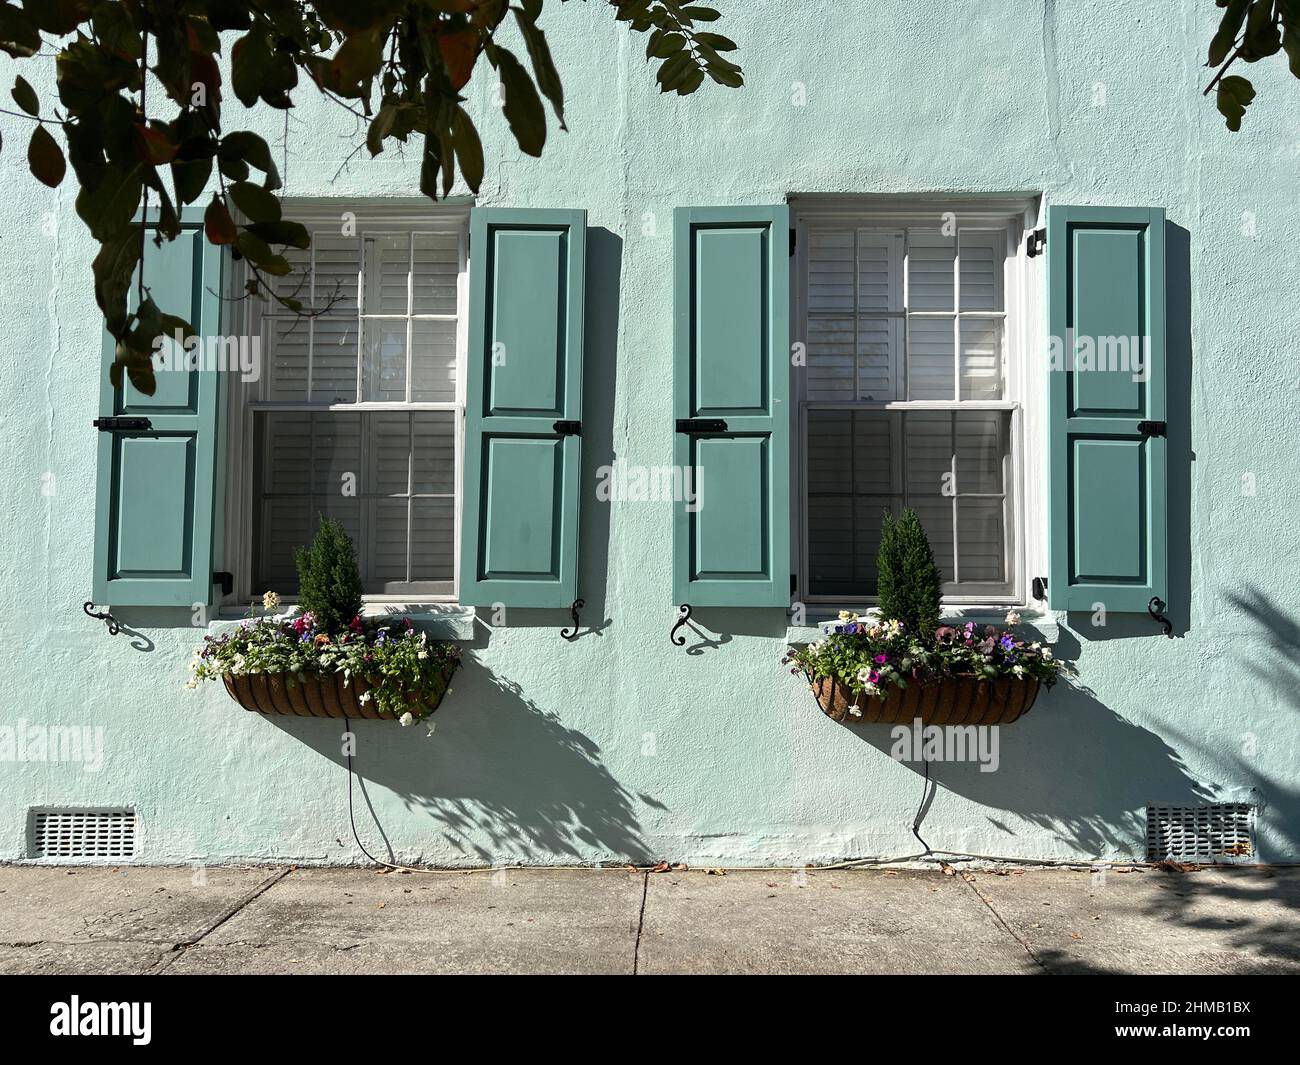 Architektonische Details von Fenstern, Fensterläden und Blumenkästen in Charleston, South Carolina, einem Luxusreiseziel der Südstaaten der Vereinigten Staaten. Stockfoto